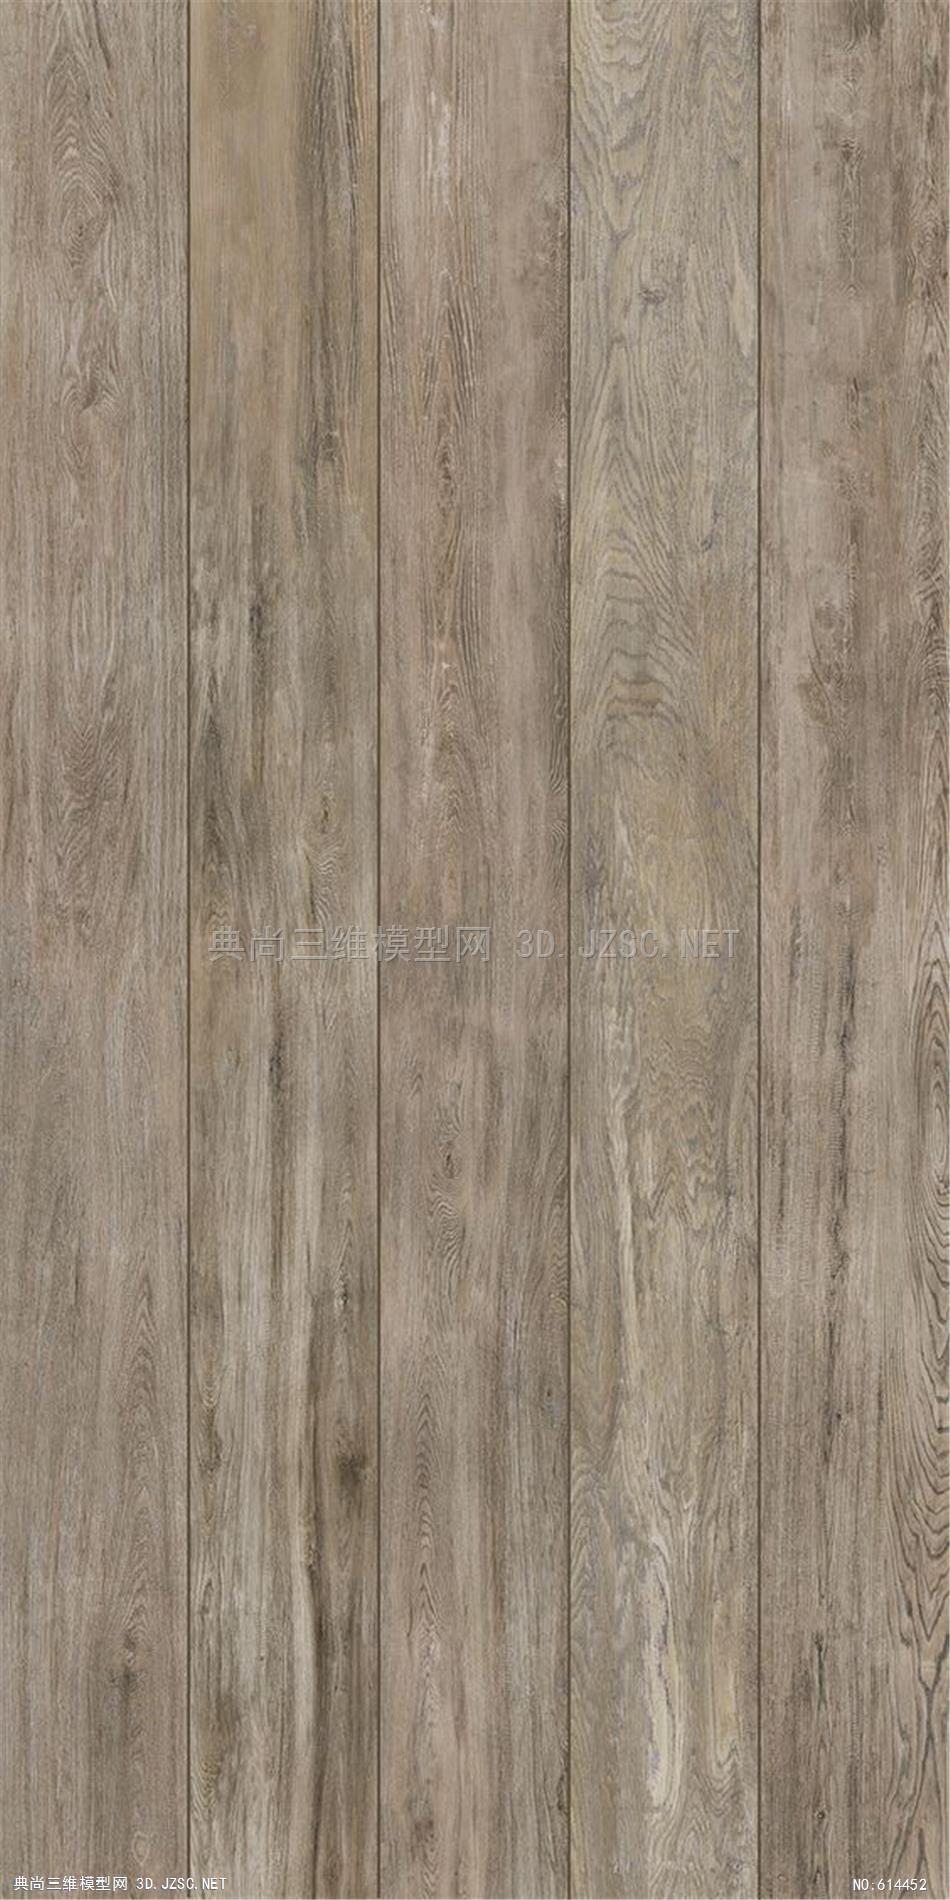 木饰面 木纹 木材  高清材质贴图 (305)